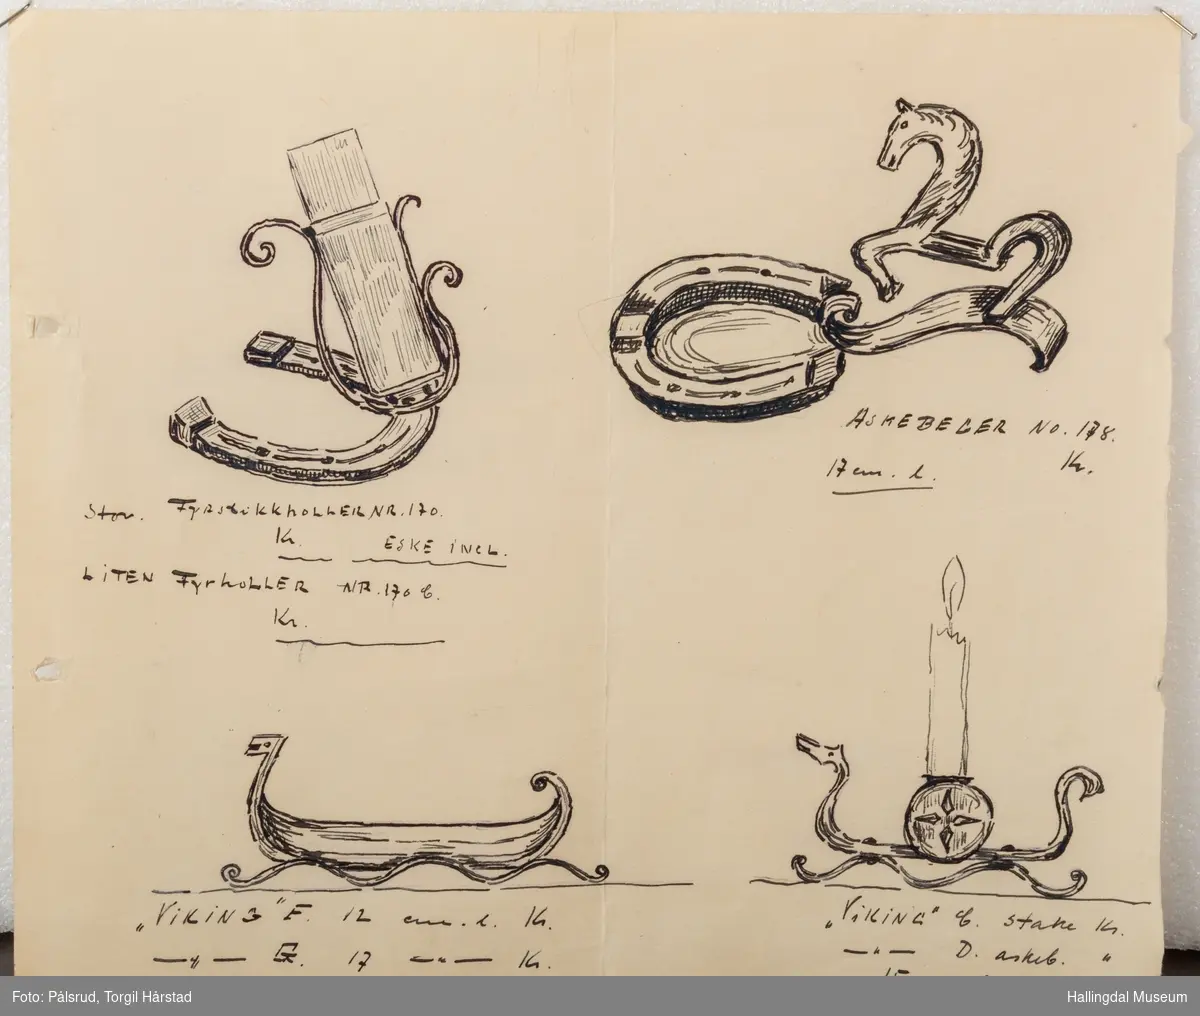 Fire skisser av en fyrstikkeskeholder, et askebeger formet som en vikingbåt, og et askebeger formet som en hestesko med en hest og en lysestake med en enklere vikingbåt.